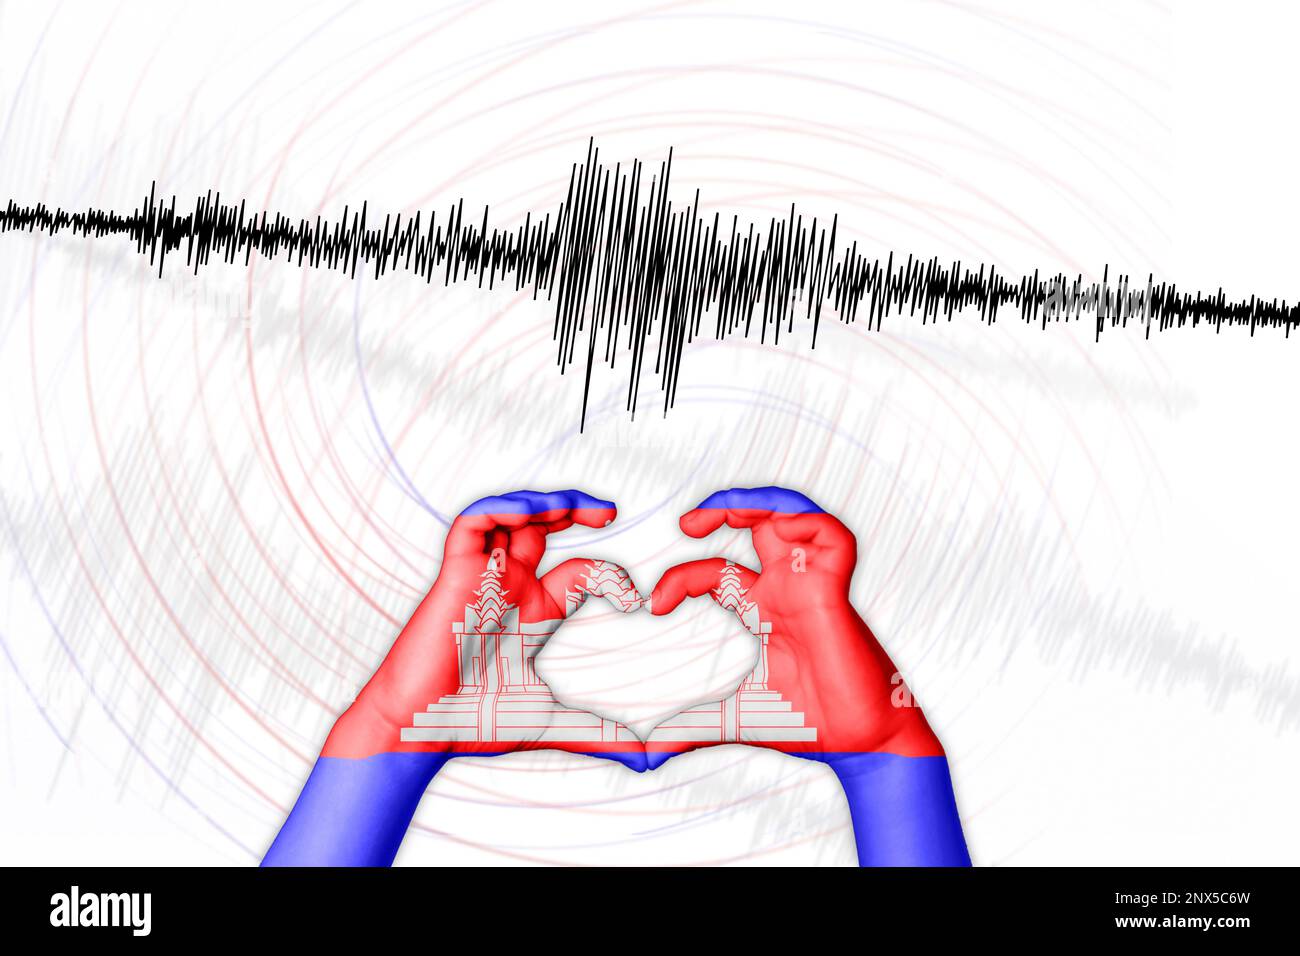 Seismische Aktivität Erdbeben Kambodscha Symbol der Heart Richter Scale Stockfoto